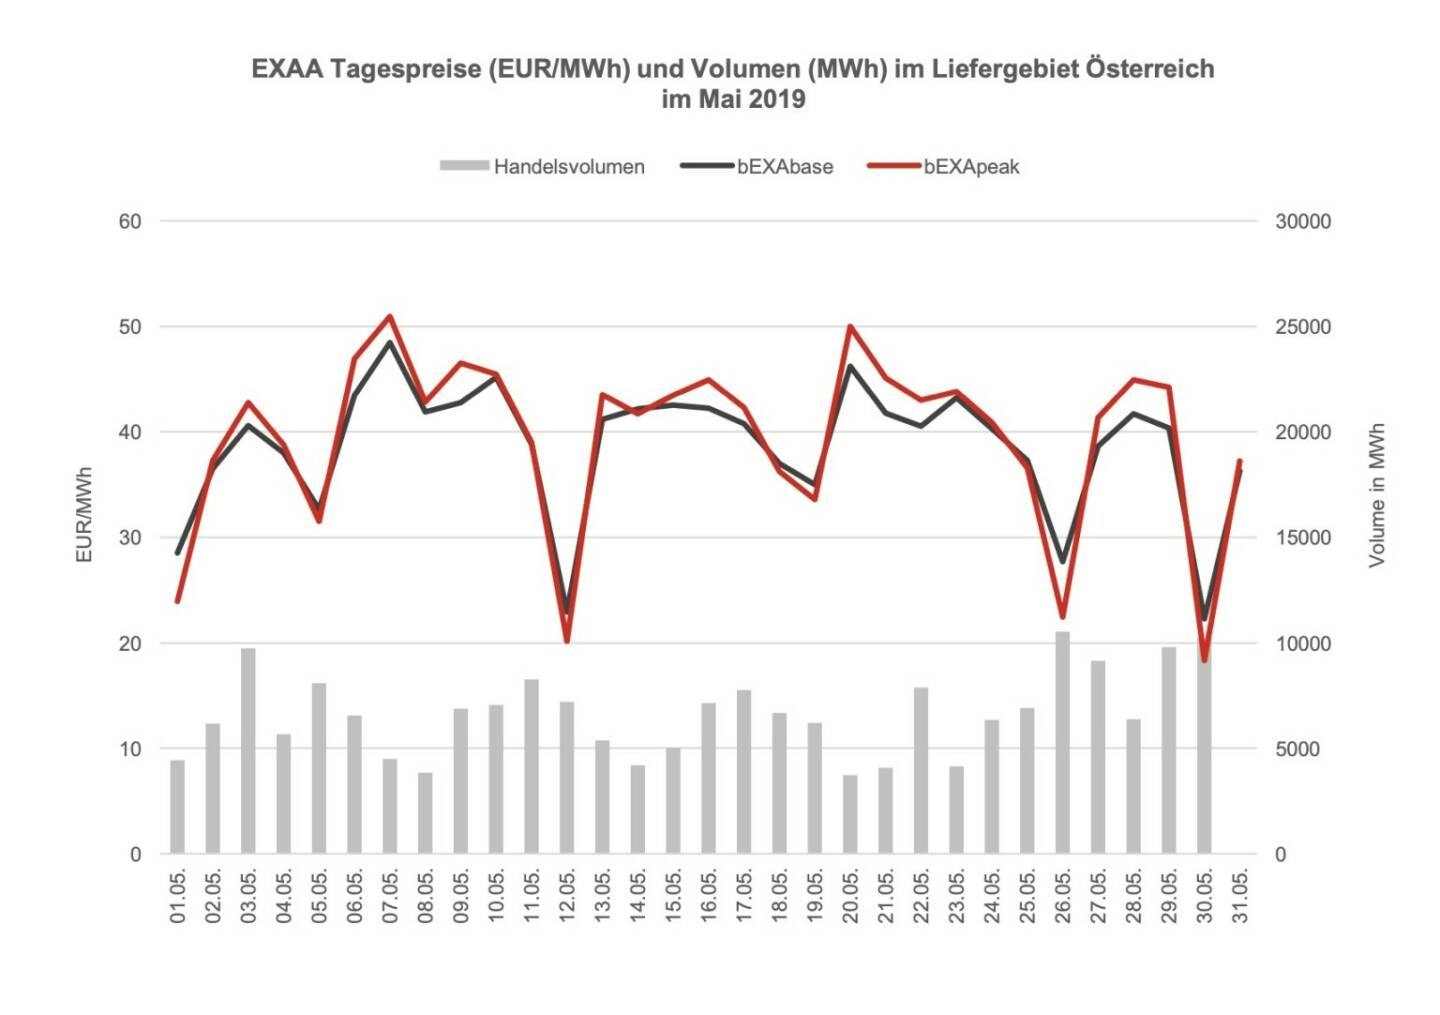 EXAA Tagespreise (EUR/MWh) und Volumen (MWh) im Liefergebiet Österreich im Mai 2019